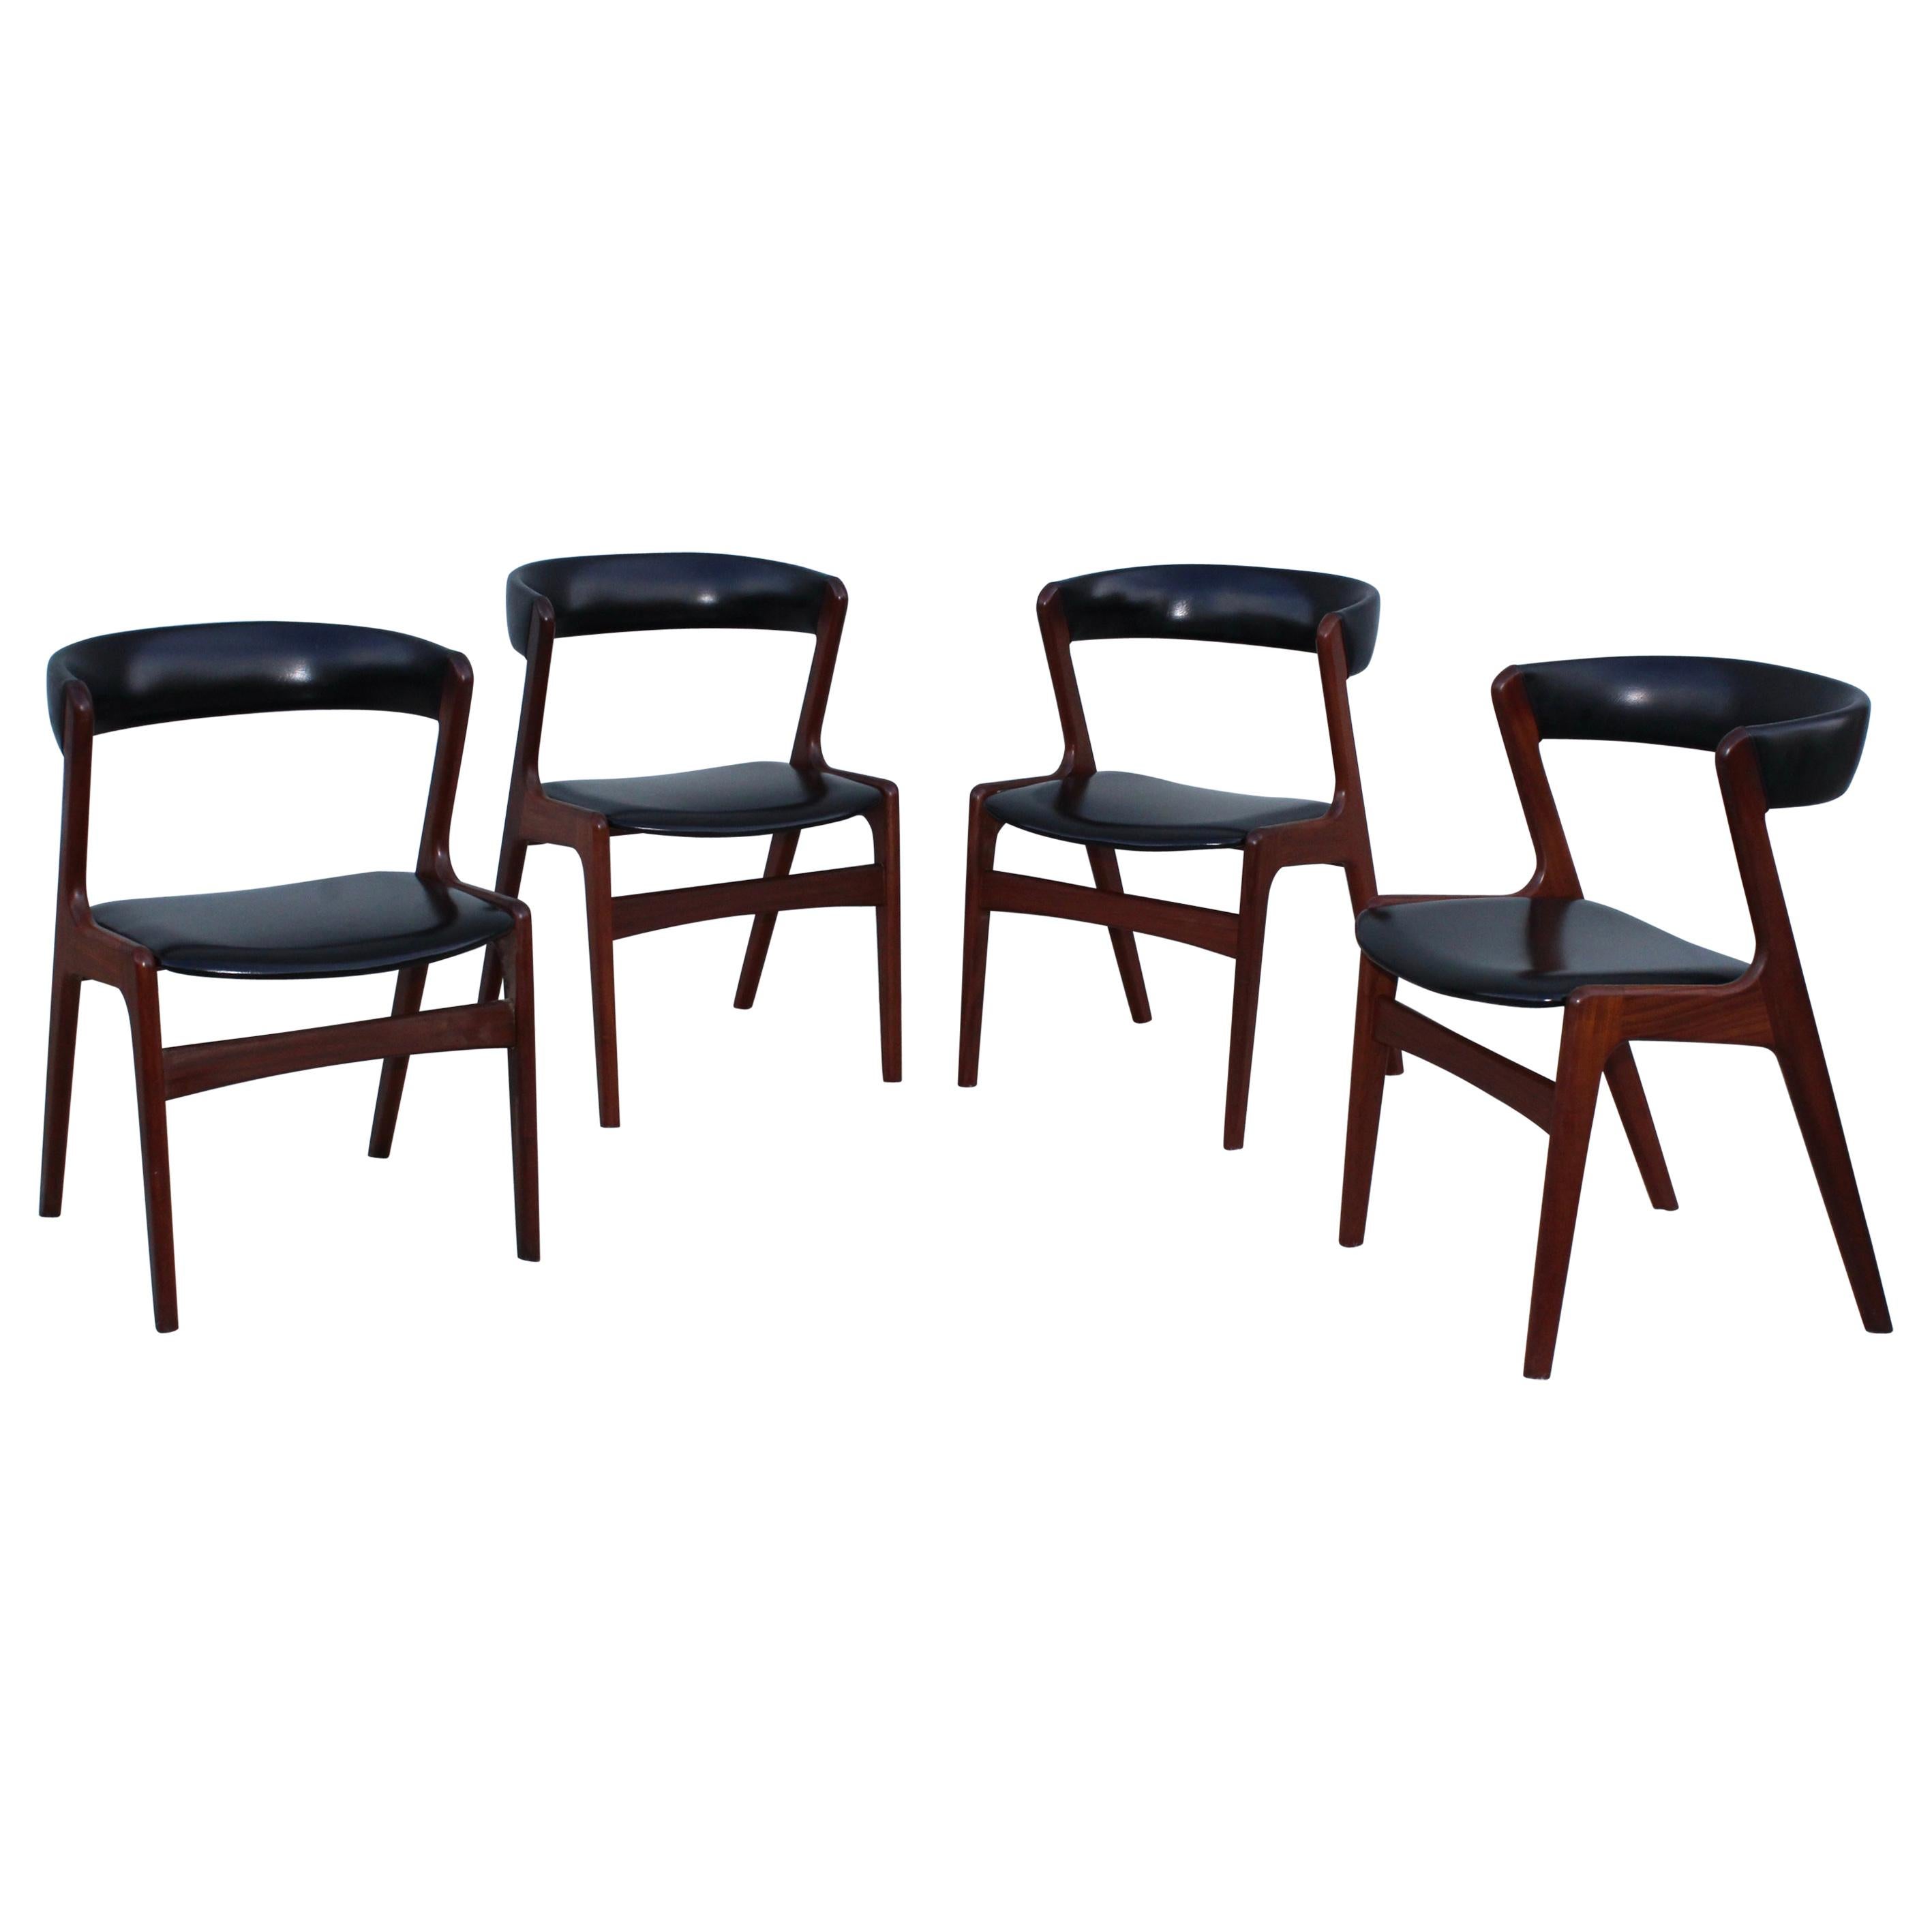 Kai Kristiansen Teak Dining Chairs